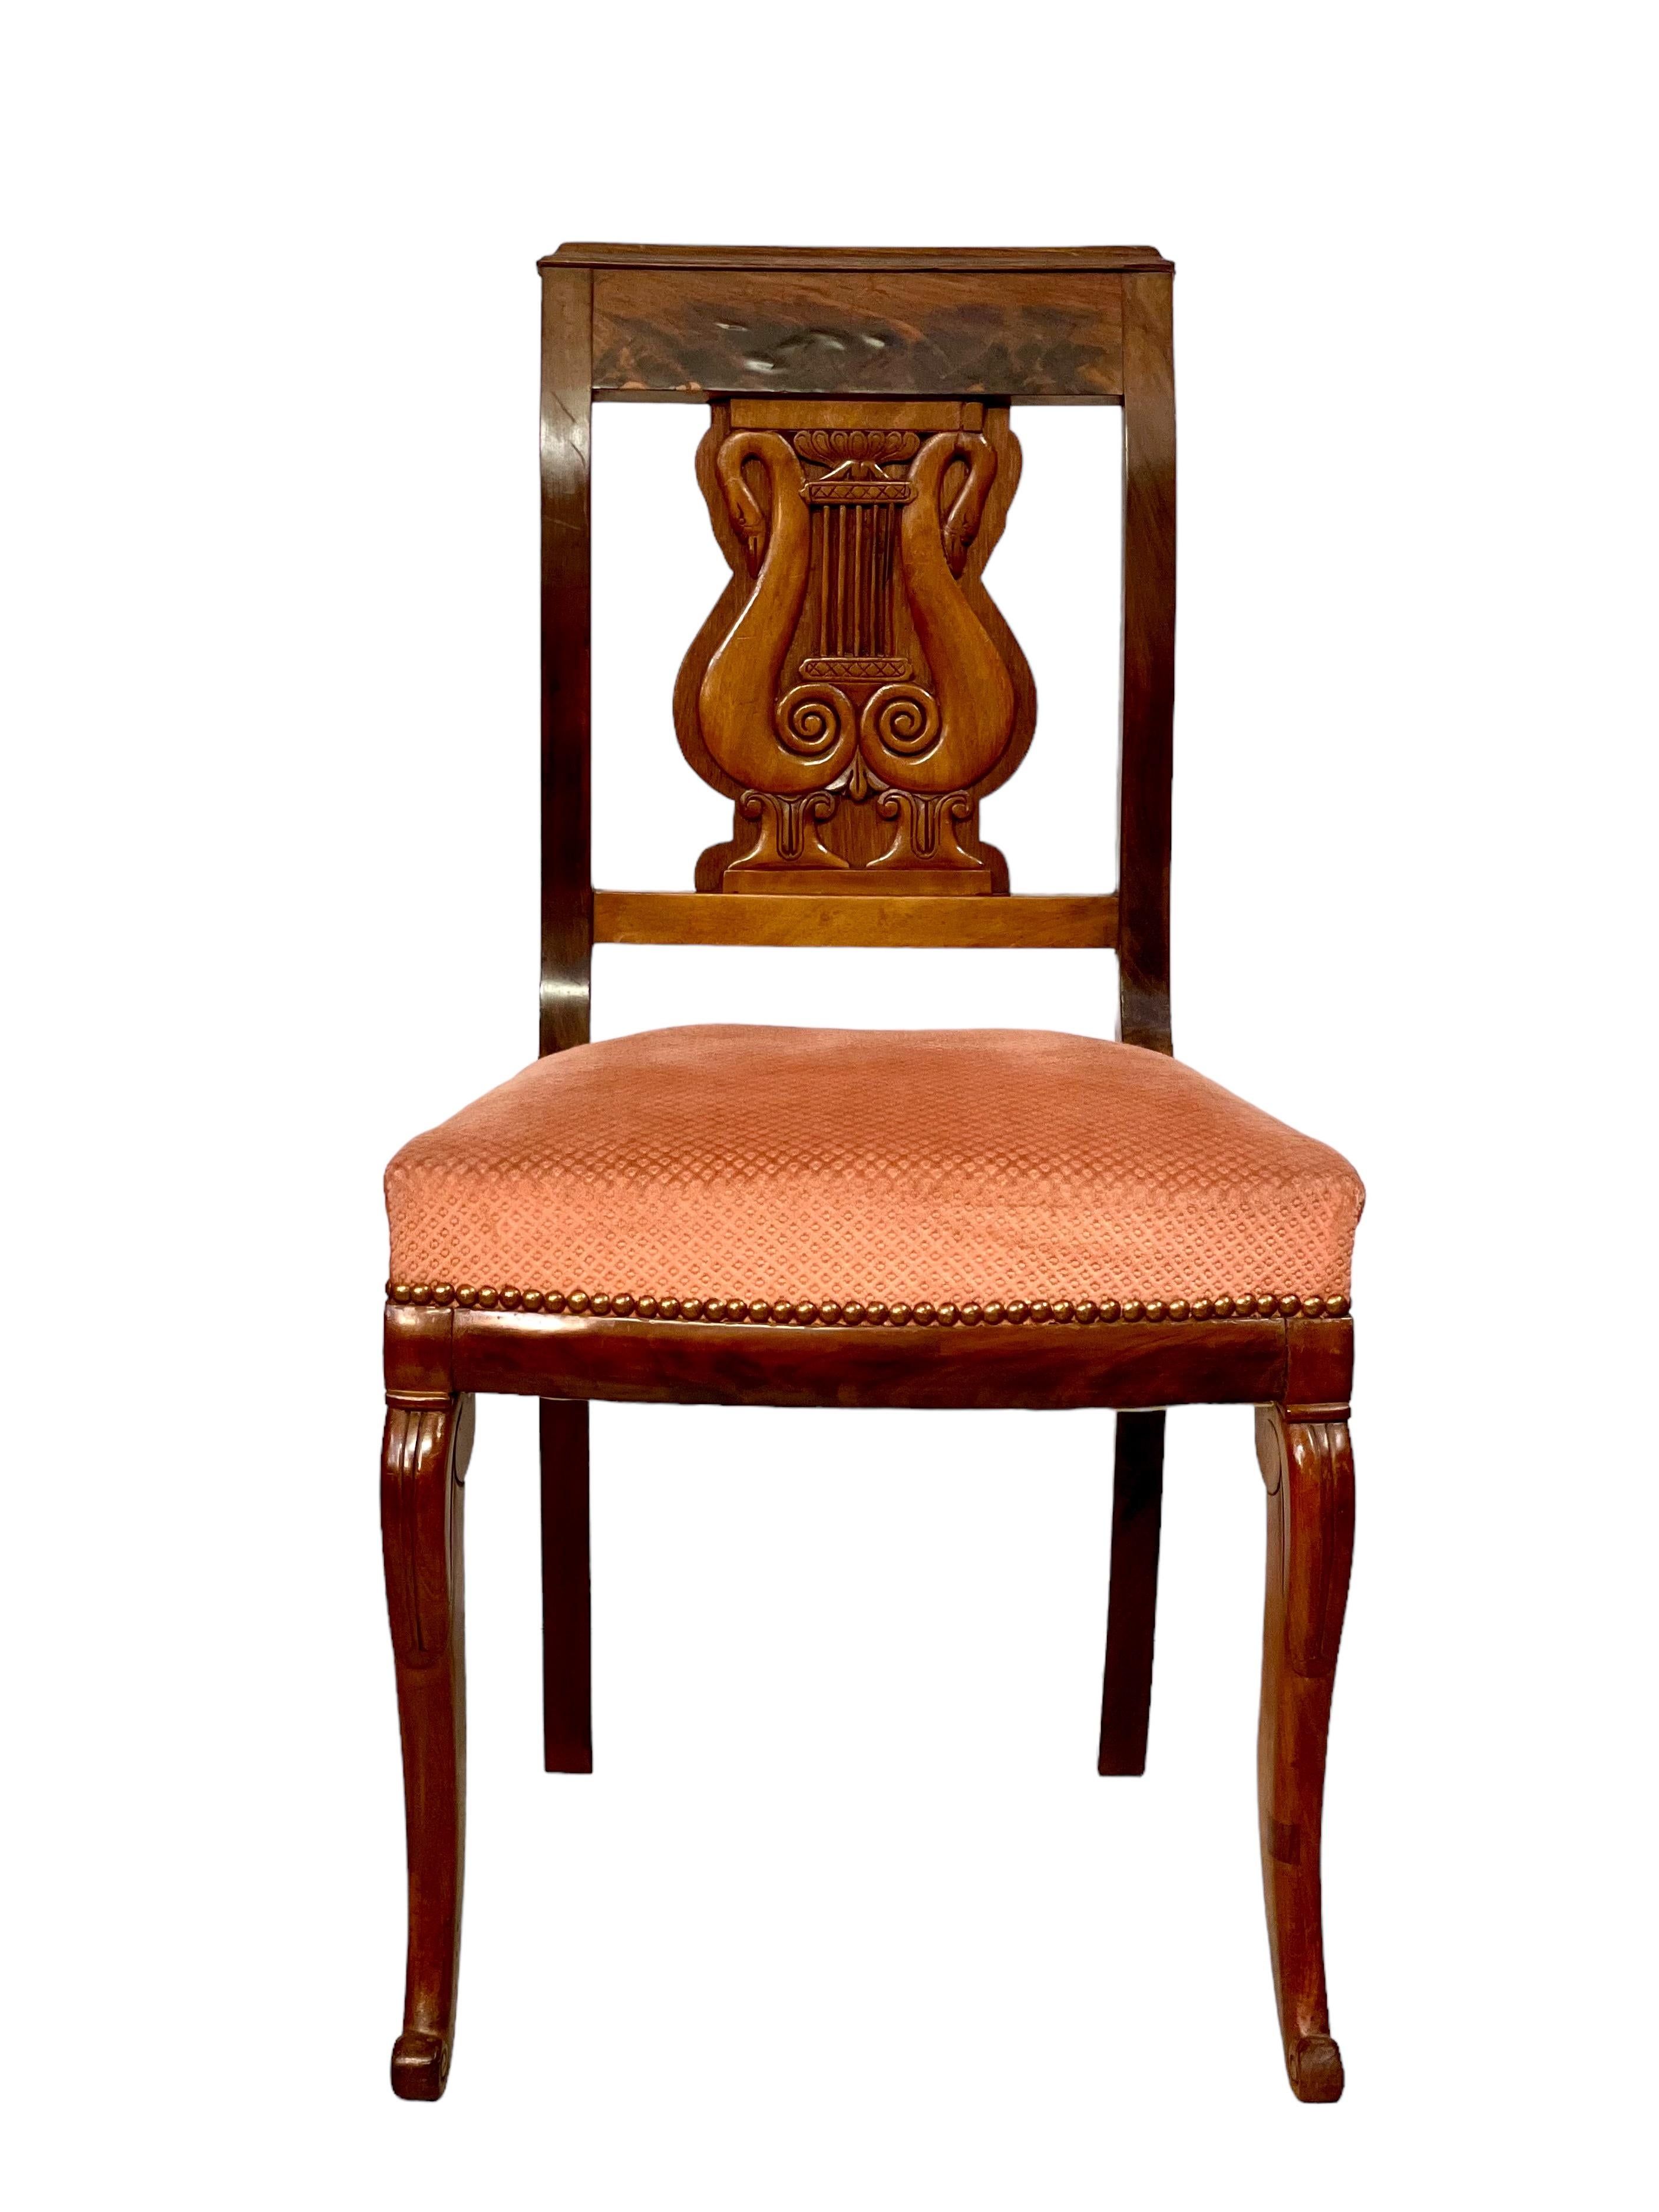 Ein Satz von sechs antiken französischen Esszimmerstühlen aus der Restaurationszeit (frühes 19. Jahrhundert), jeder mit einer kunstvoll geschnitzten Rückenlehne in Form einer Leier. Die aus Obstholz und Obstholzfurnier gefertigten Stühle sind